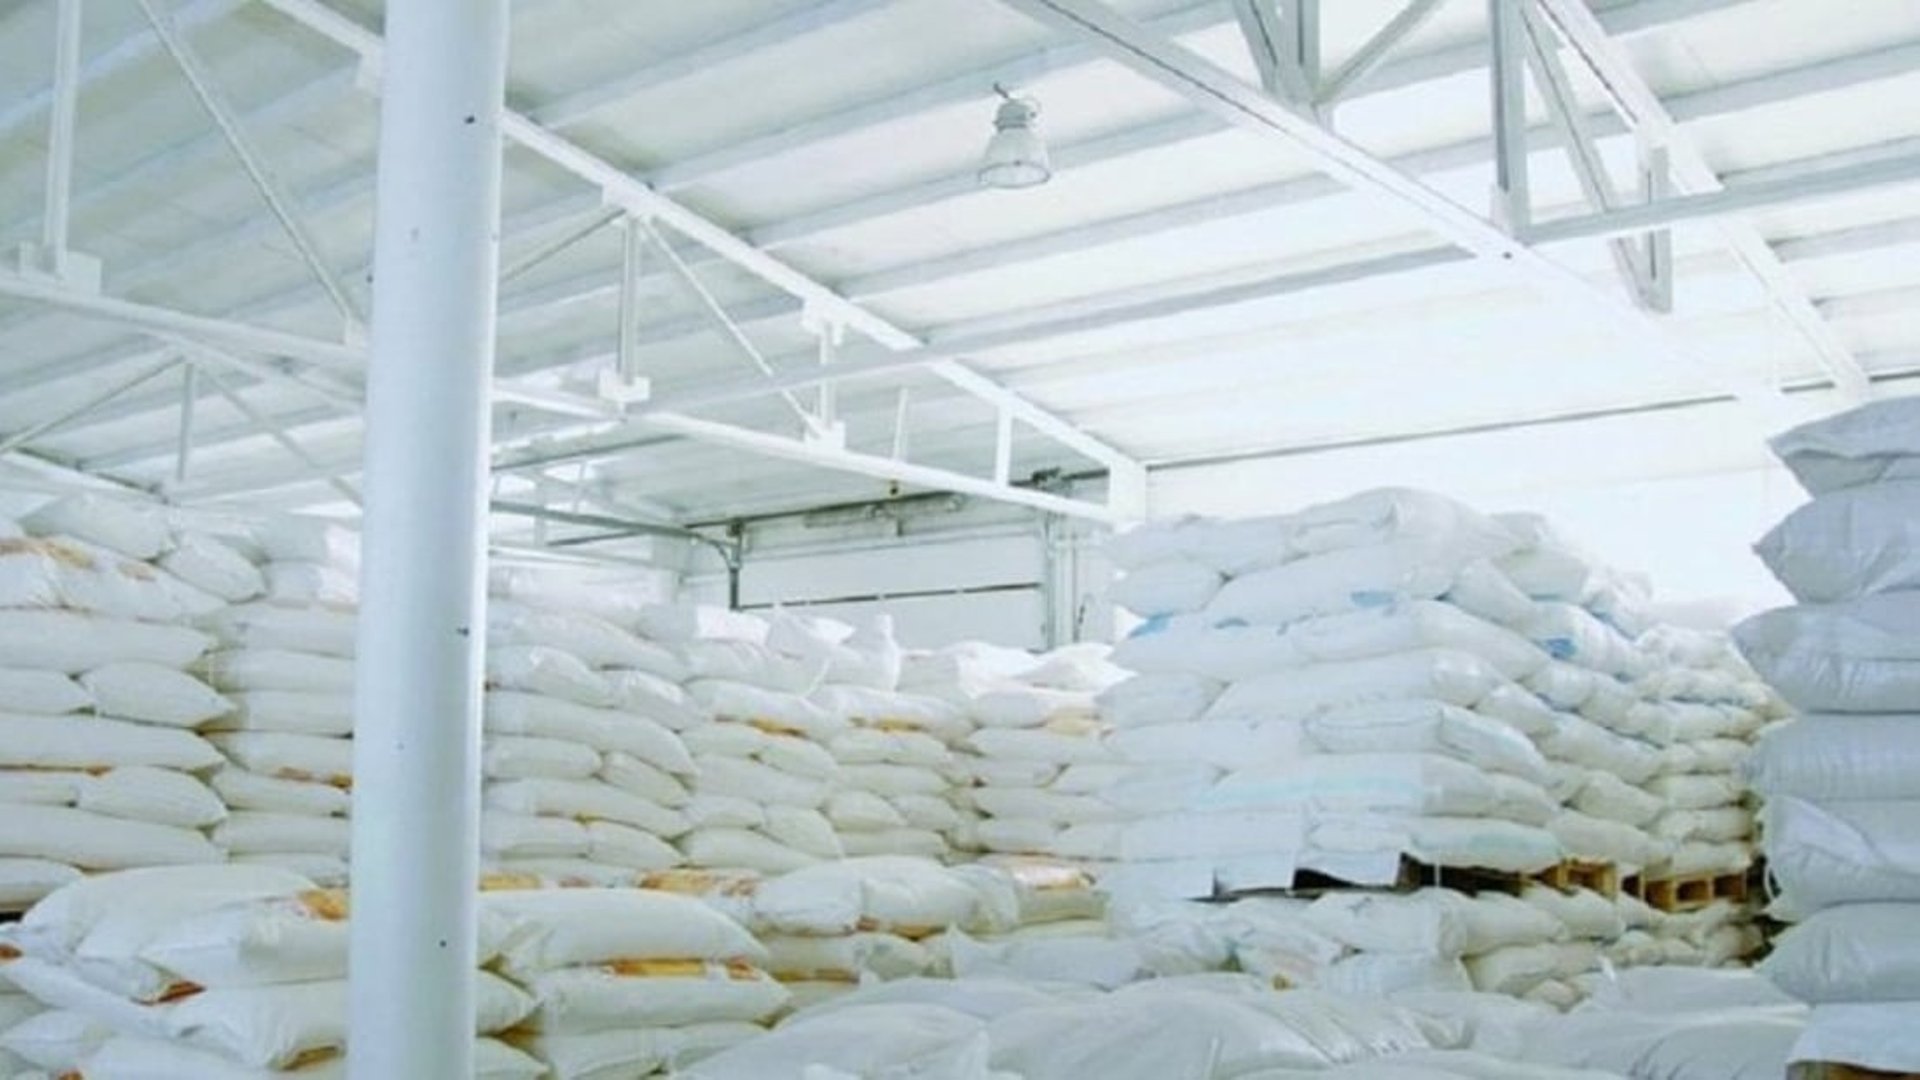 Iraq launches domestic zerograde flour production